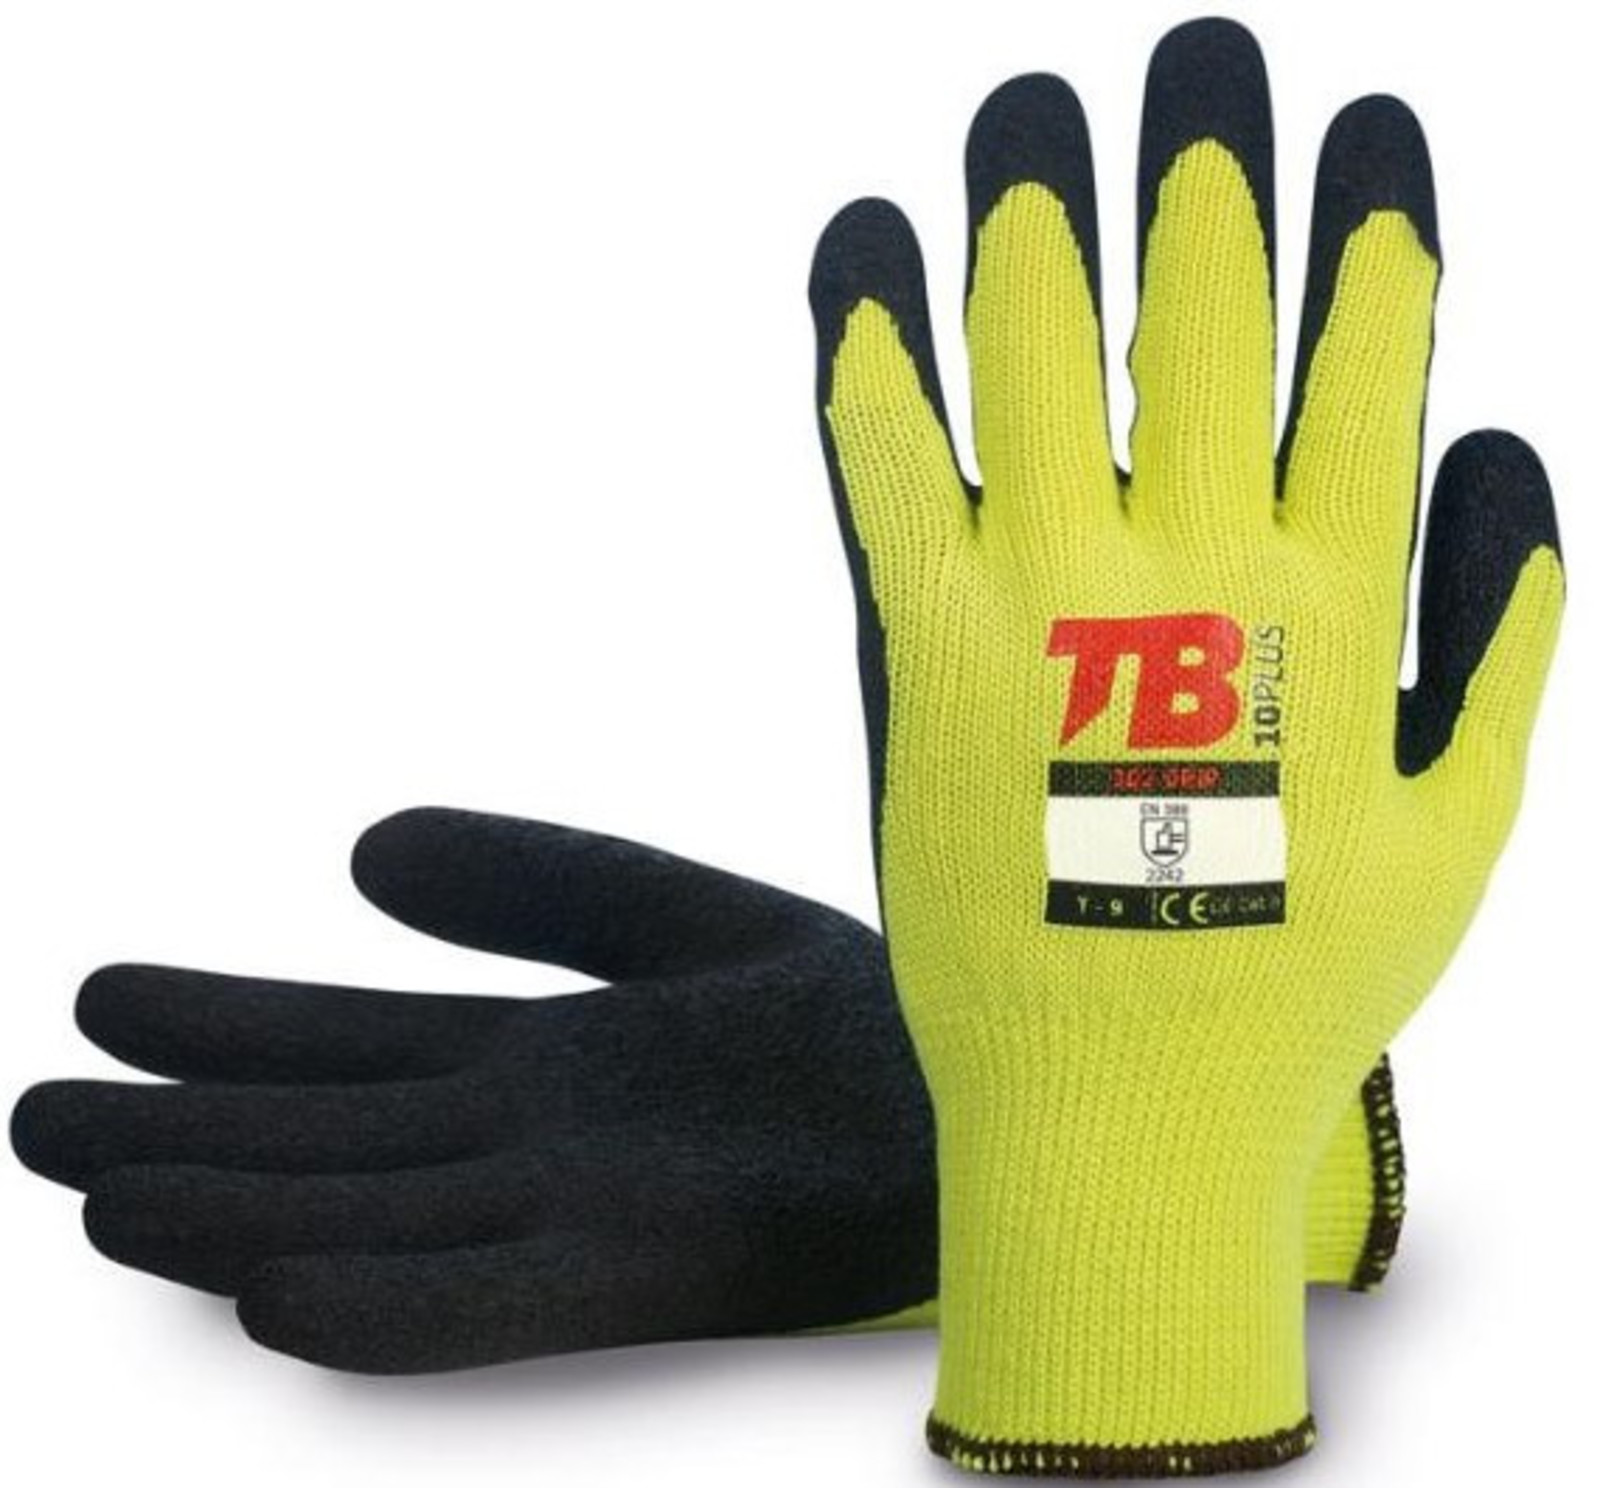 Pracovné rukavice TB 302 Grip - veľkosť: 7/S